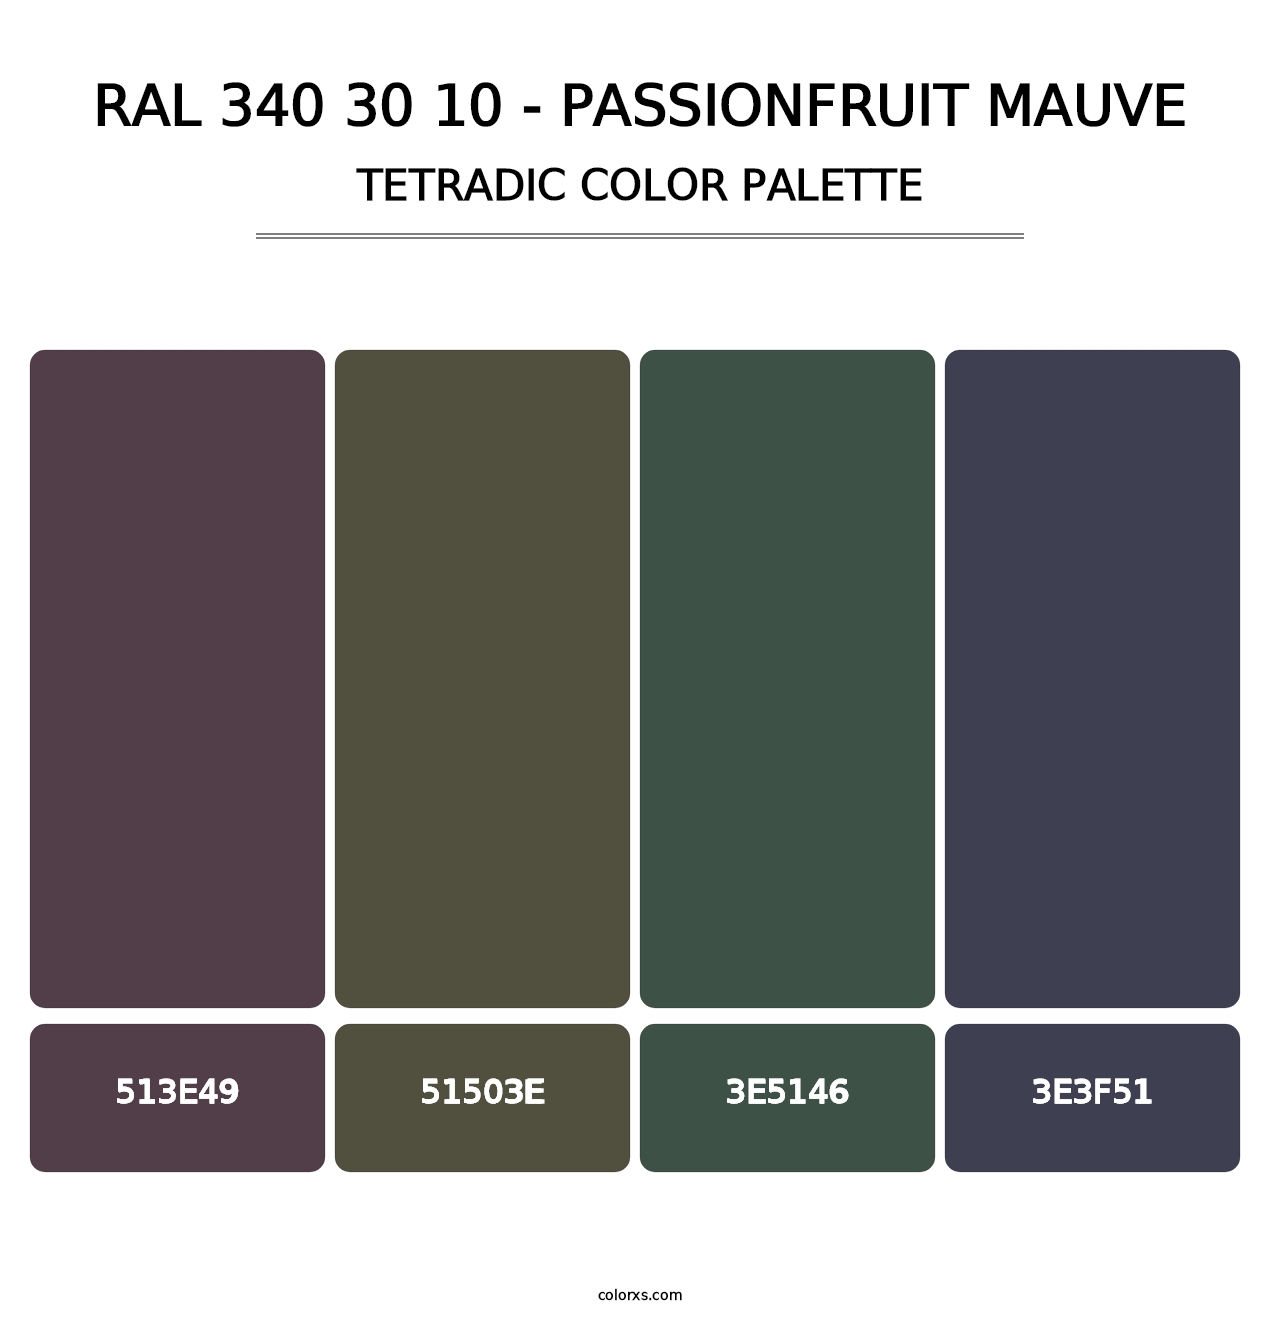 RAL 340 30 10 - Passionfruit Mauve - Tetradic Color Palette